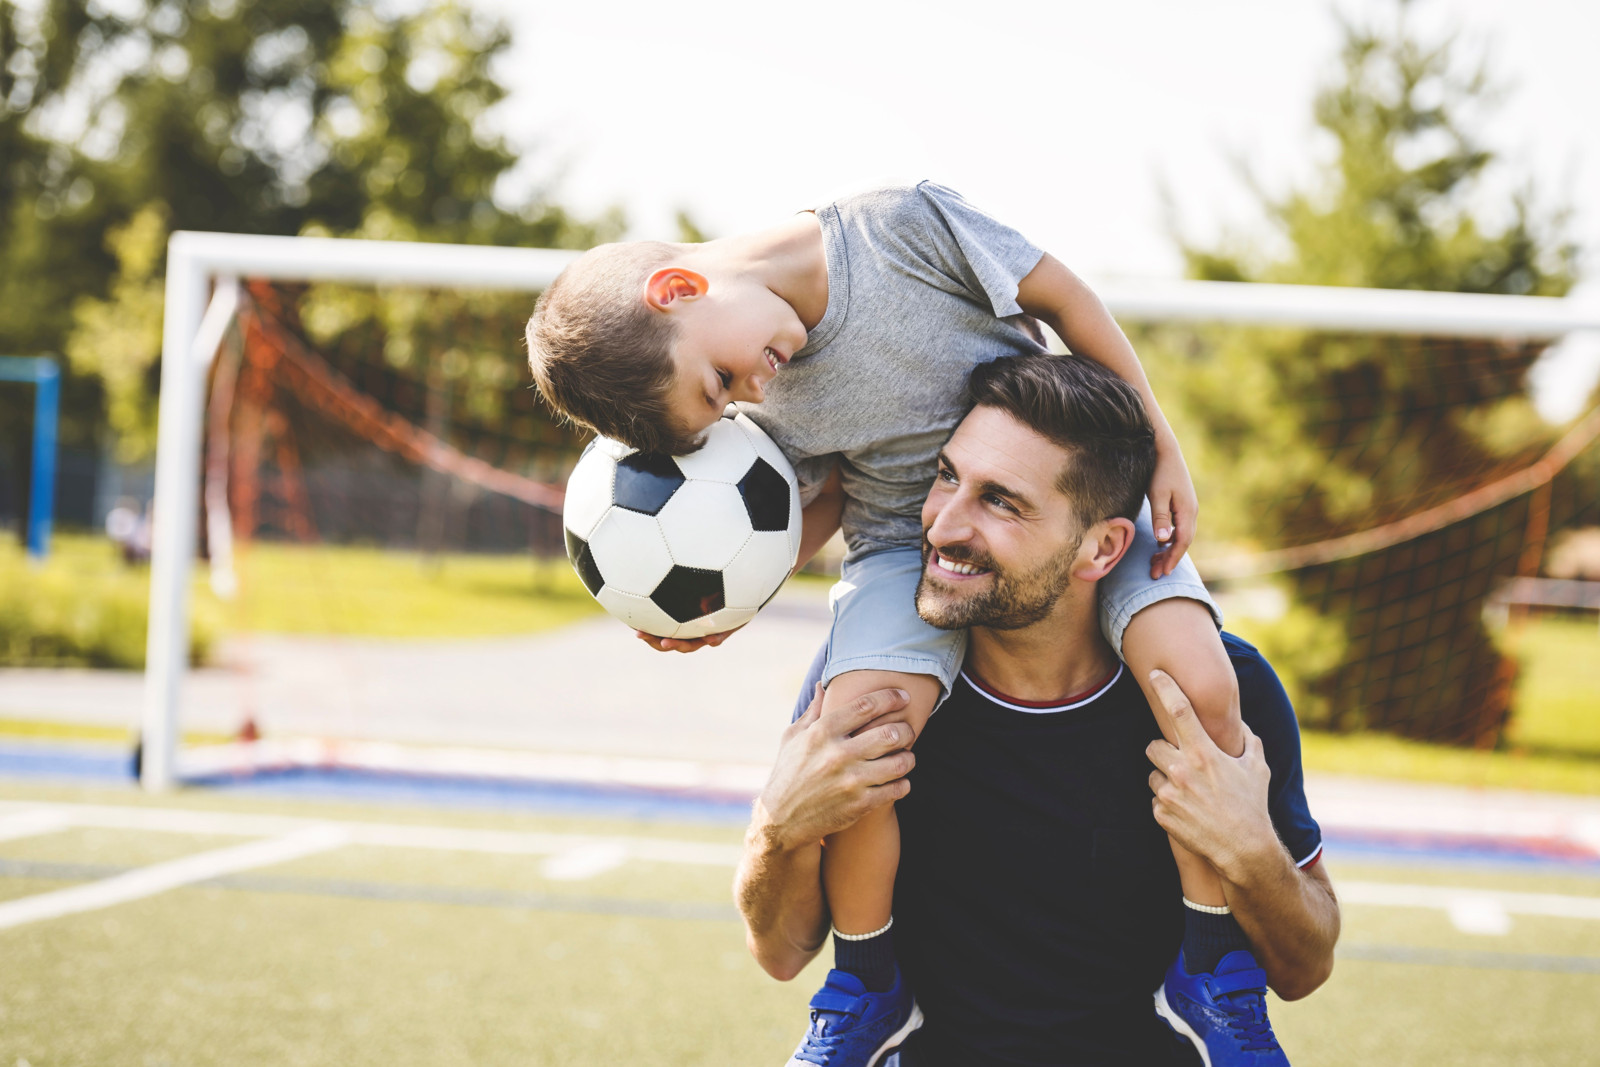 Gemeinsame Zeit ist wichtig für Vater und Kind: Wenn Sie beide Freude am Kicken haben, können Sie zum Beispiel zusammen Fußball spielen.